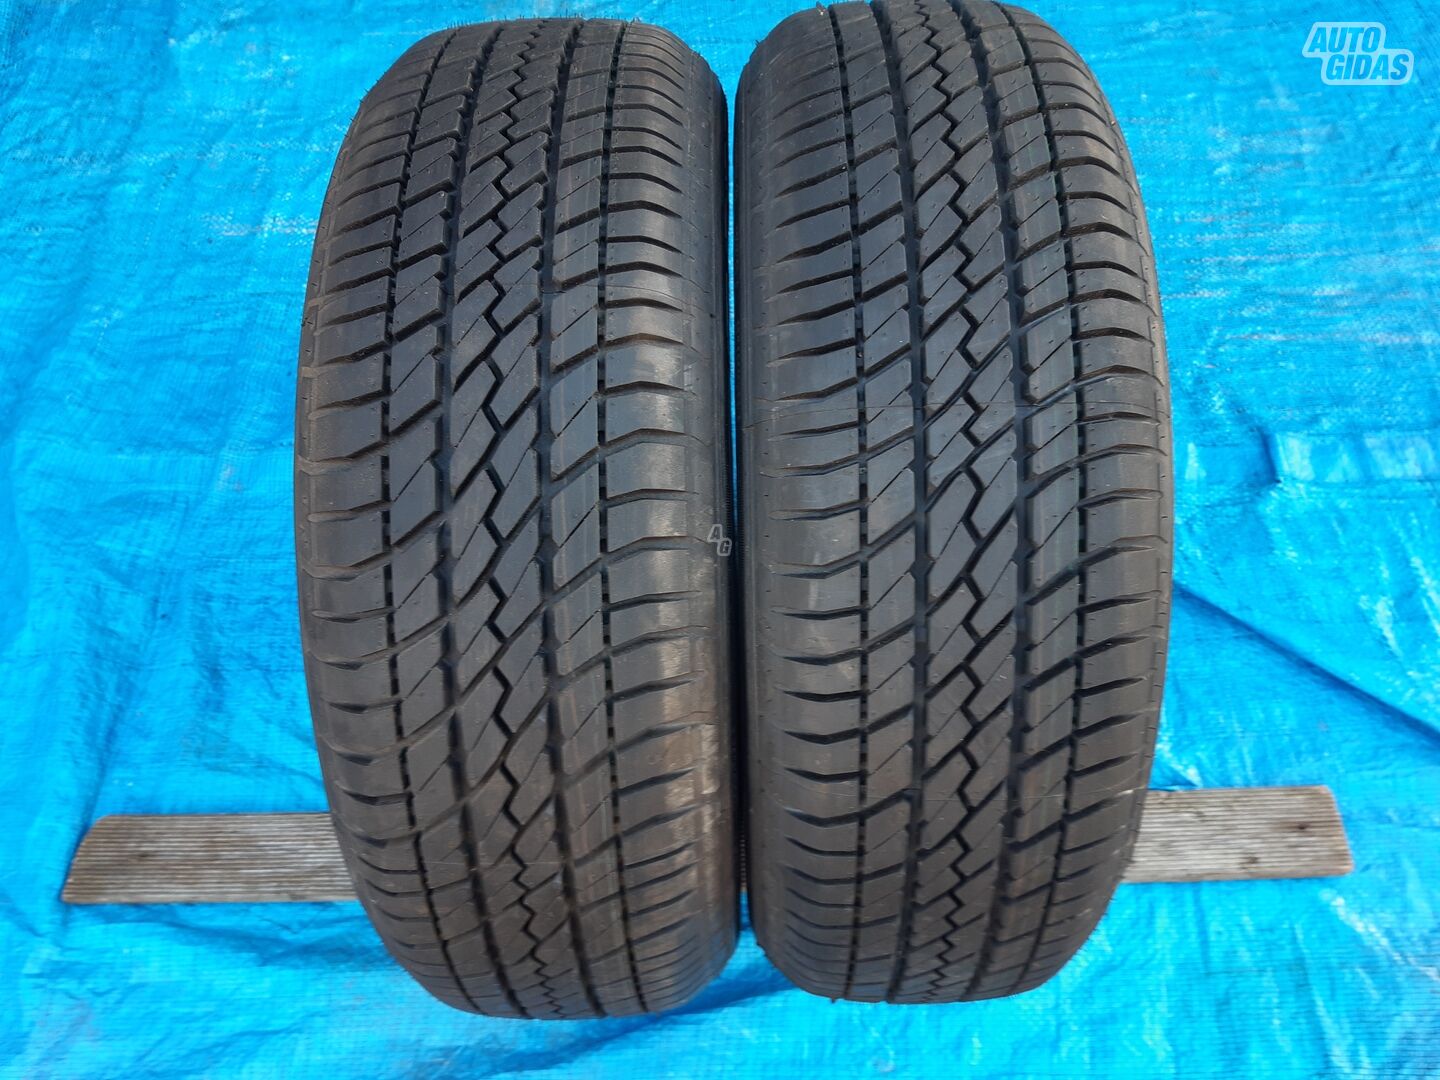 Goodyear GT2 R15 summer tyres passanger car